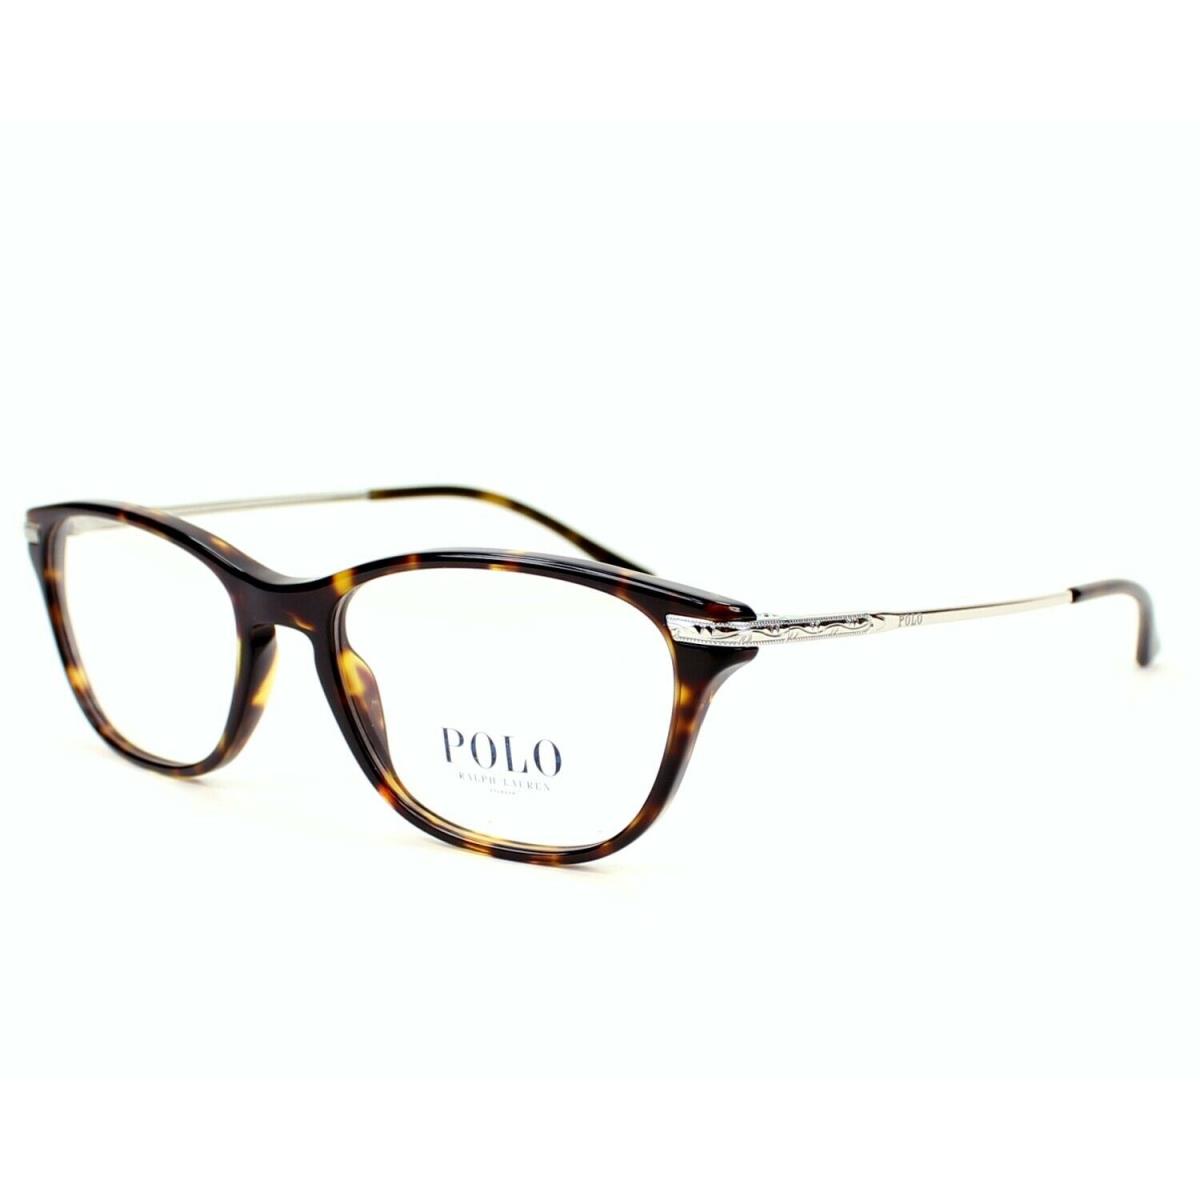 Ralph Lauren eyeglasses  - Clear Demo , Tortoise Frame 0